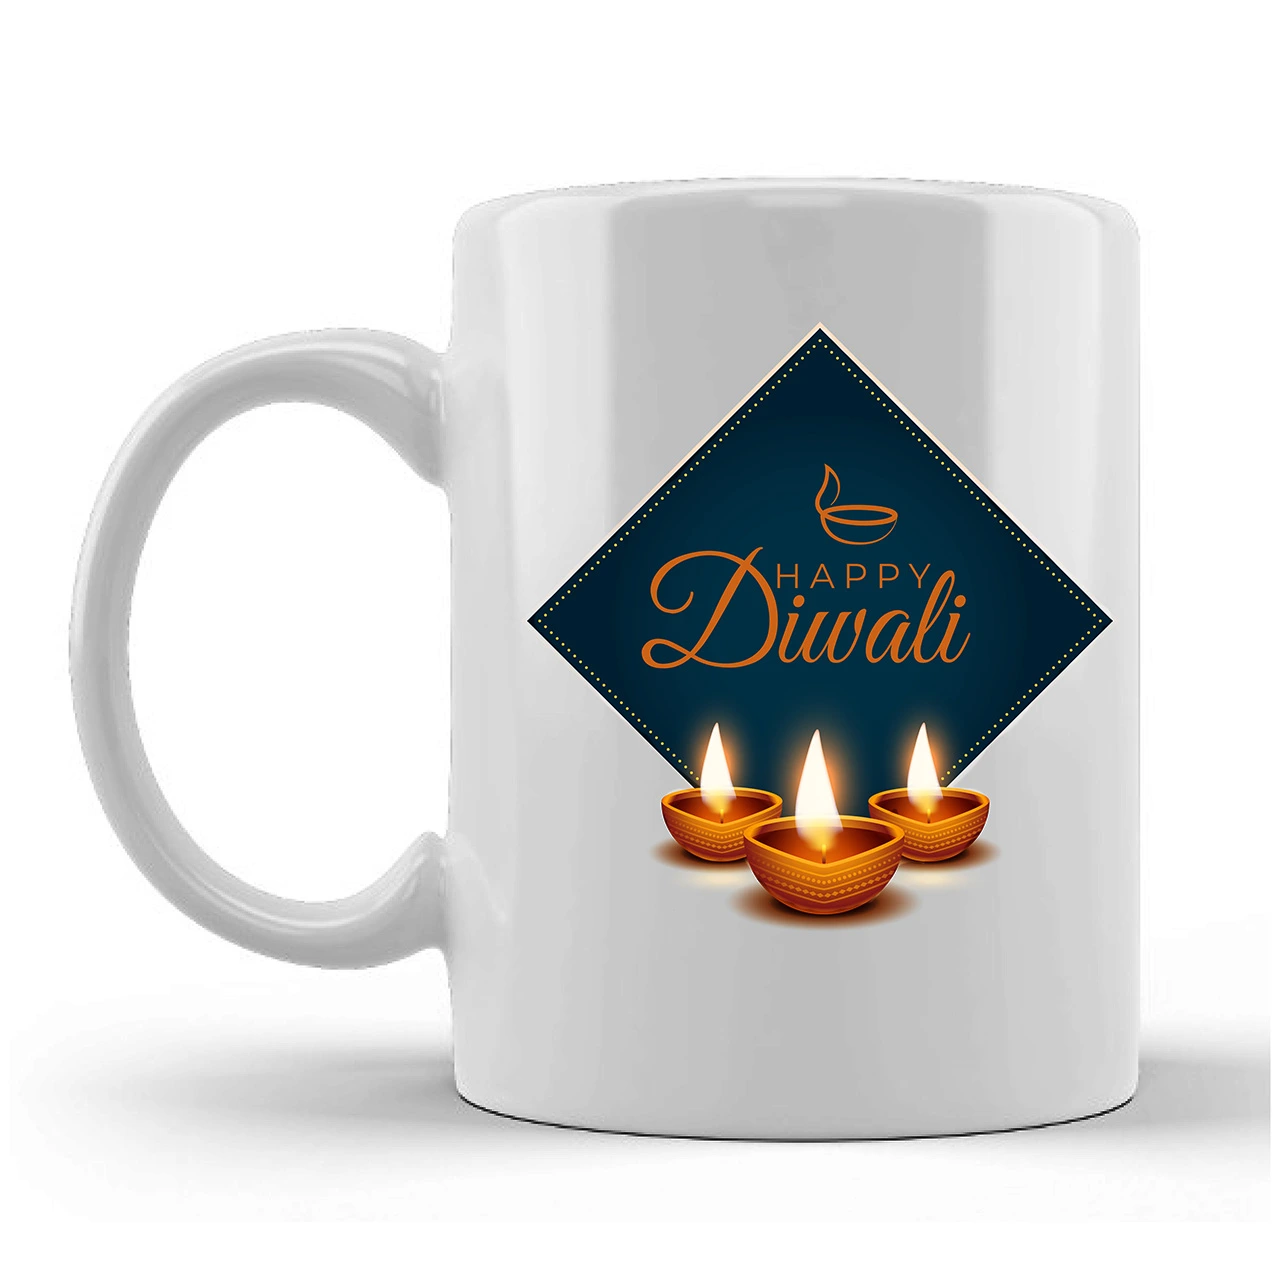 Happy Diwali Printed Ceramic Mug Gifts for | Diwali Gifts, Diwali Gift Items, Diwali Gifts for Friends, Diwali Gifts for Friends and Family, Gifts for Diwali (Design 2)